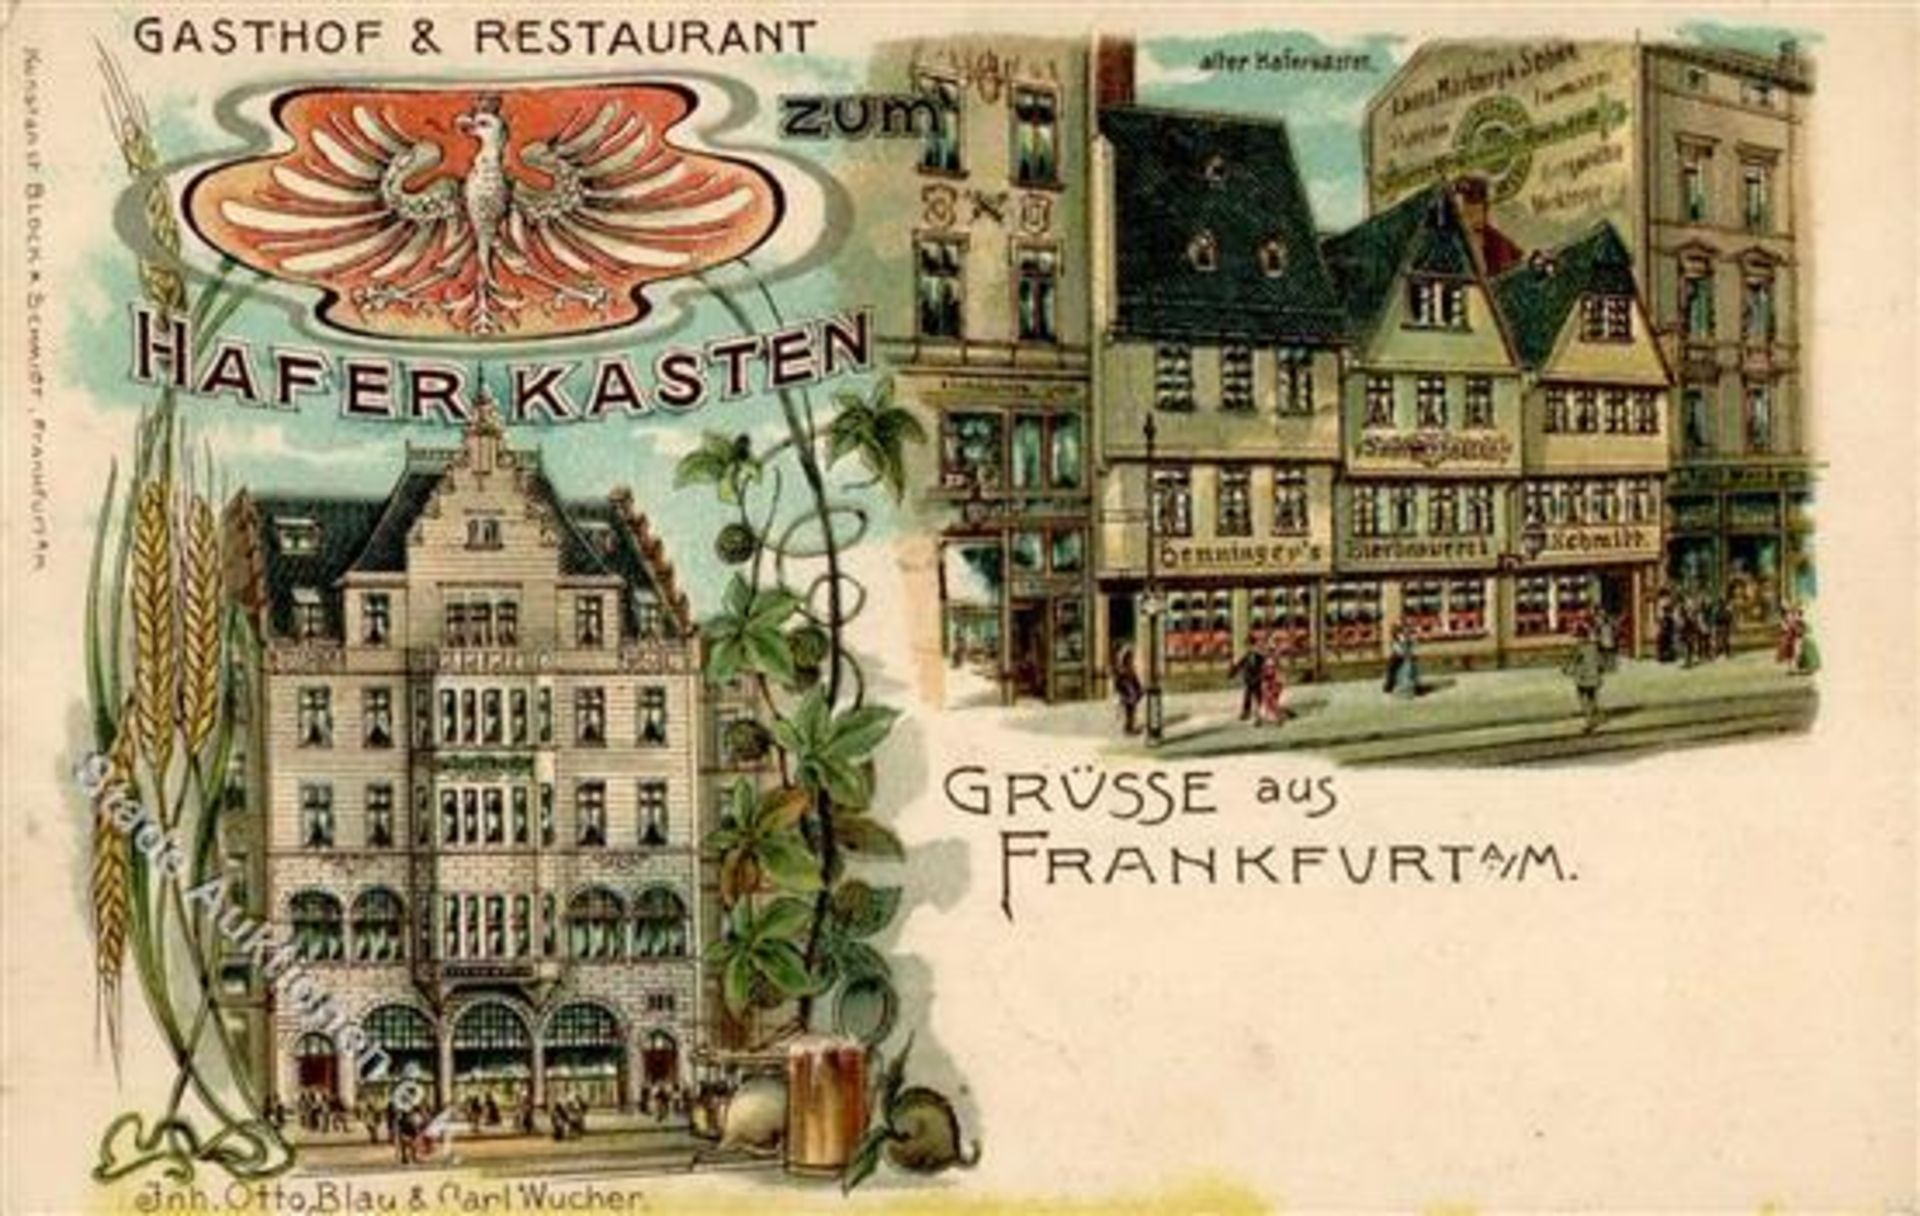 FRANKFURT (6000) - Gasthof&Restaurant HAFERKASTEN I-IIDieses Los wird in einer online-Auktion ohne